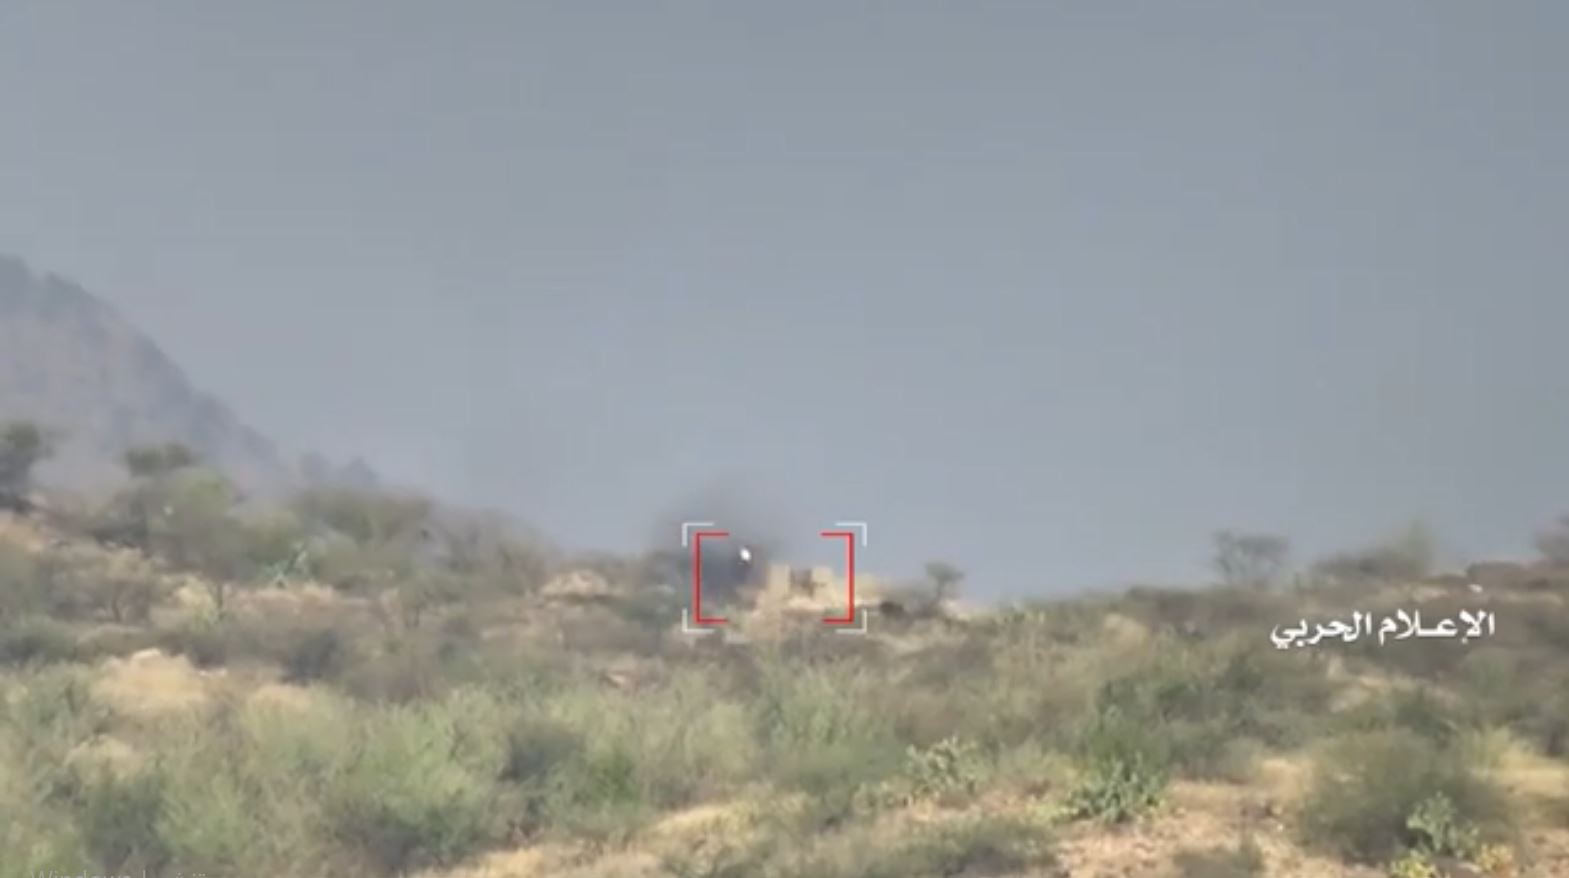 جيزان – استهداف طقم سعودي يحمل رشاش عيار50 بصاروخ موجه شرقي تبة الدفاع